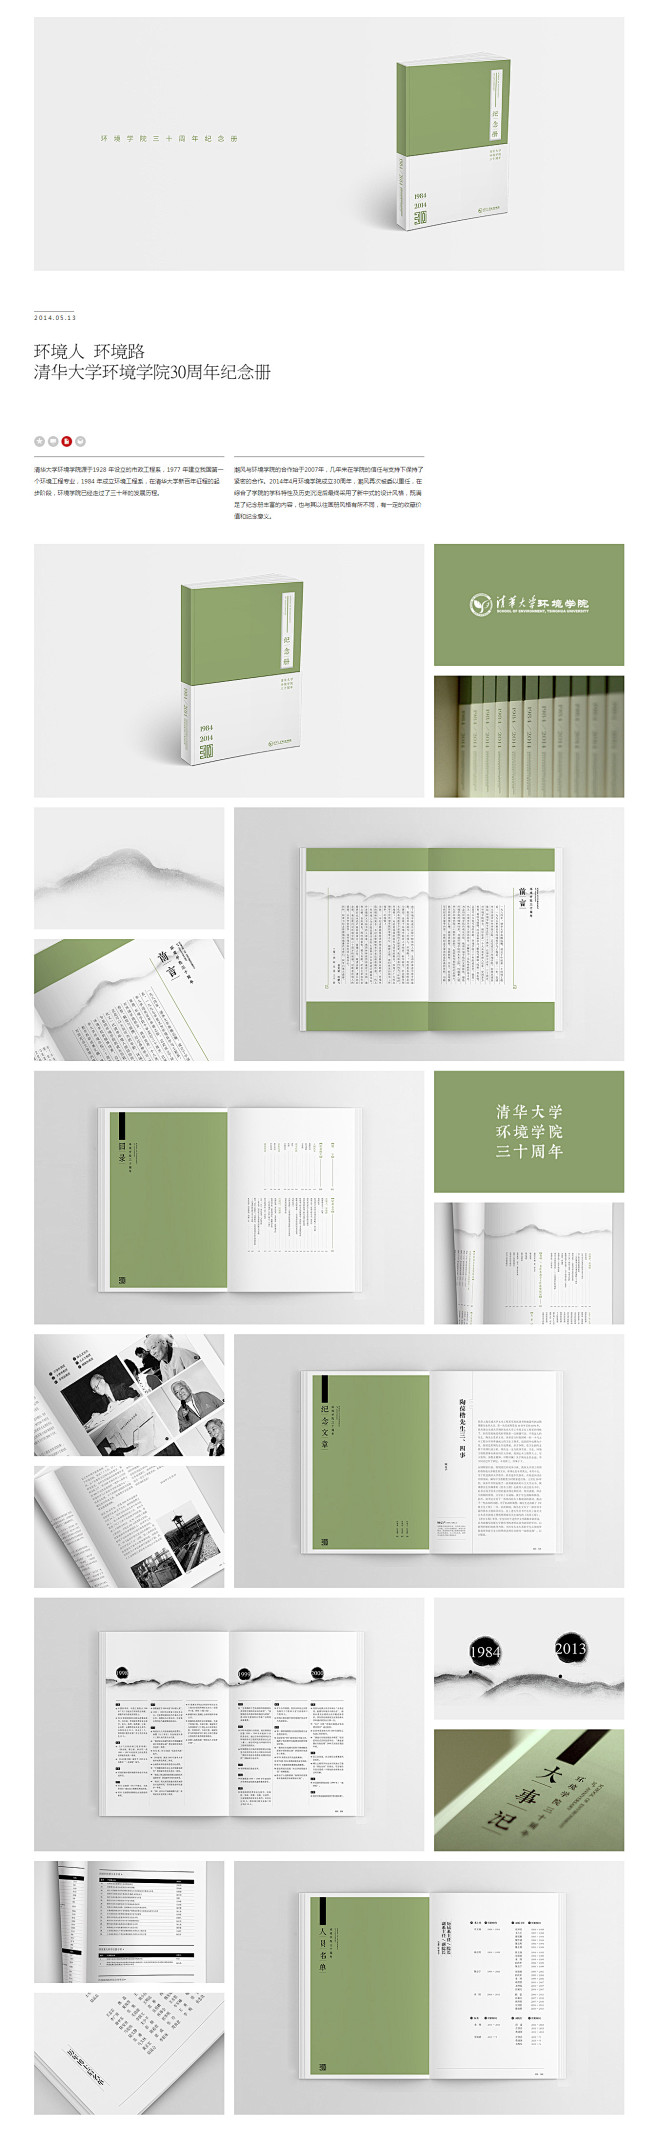 清华大学环境学院30周年纪念册设计-潮风...